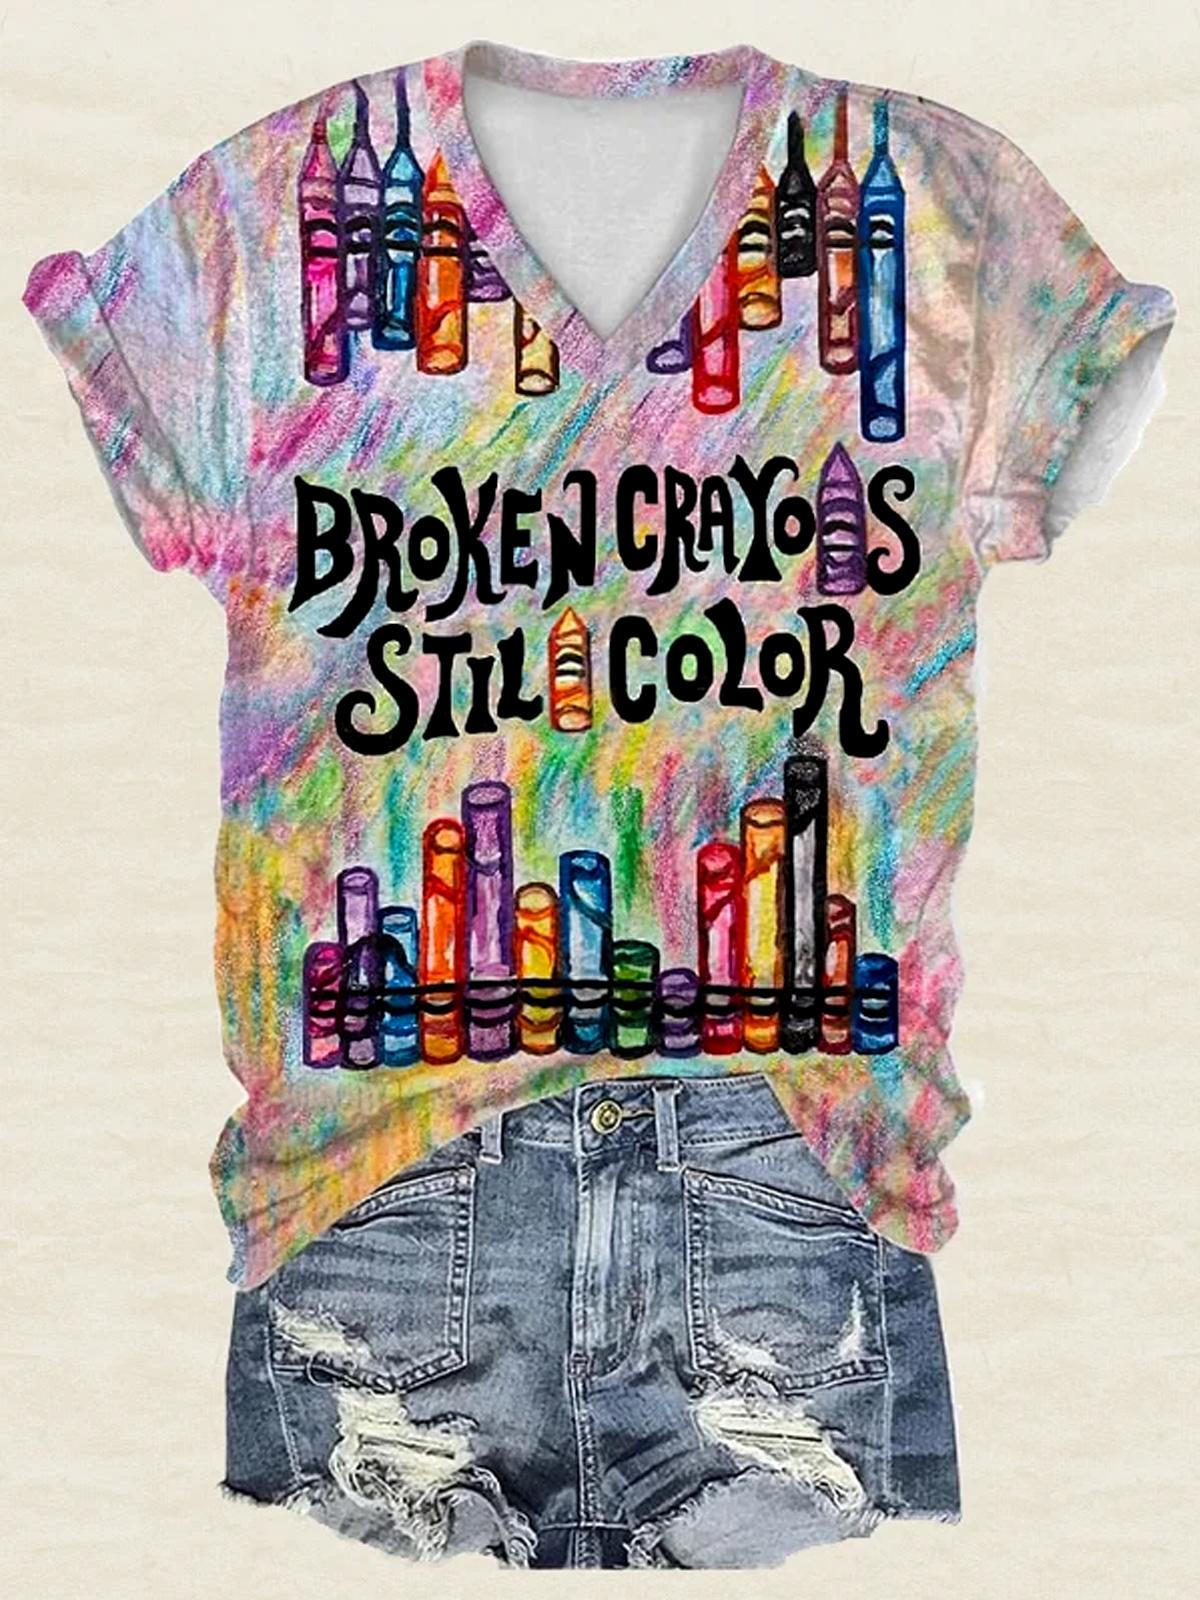 Broken Crayons Still Color Short Sleeve T-Shirt